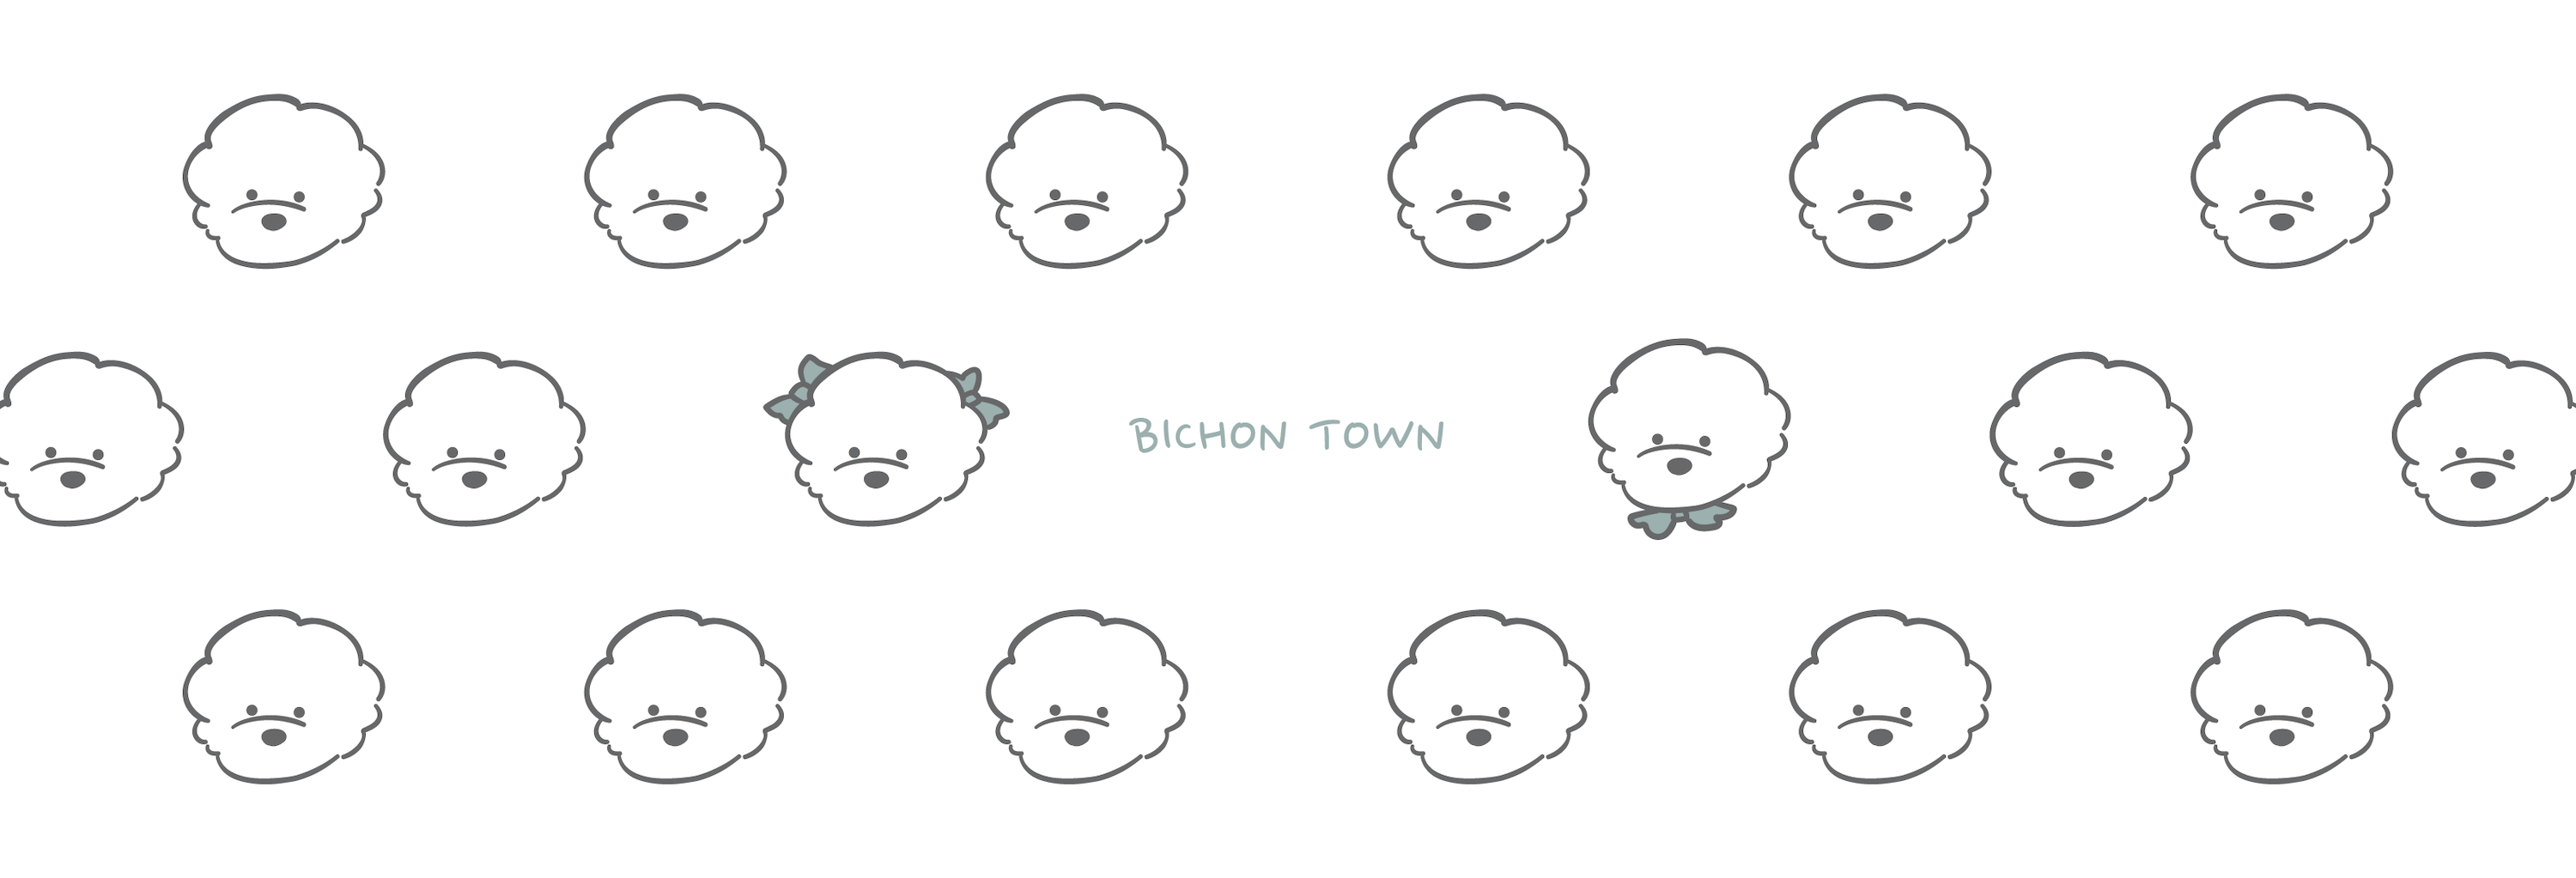 BICHON TOWN